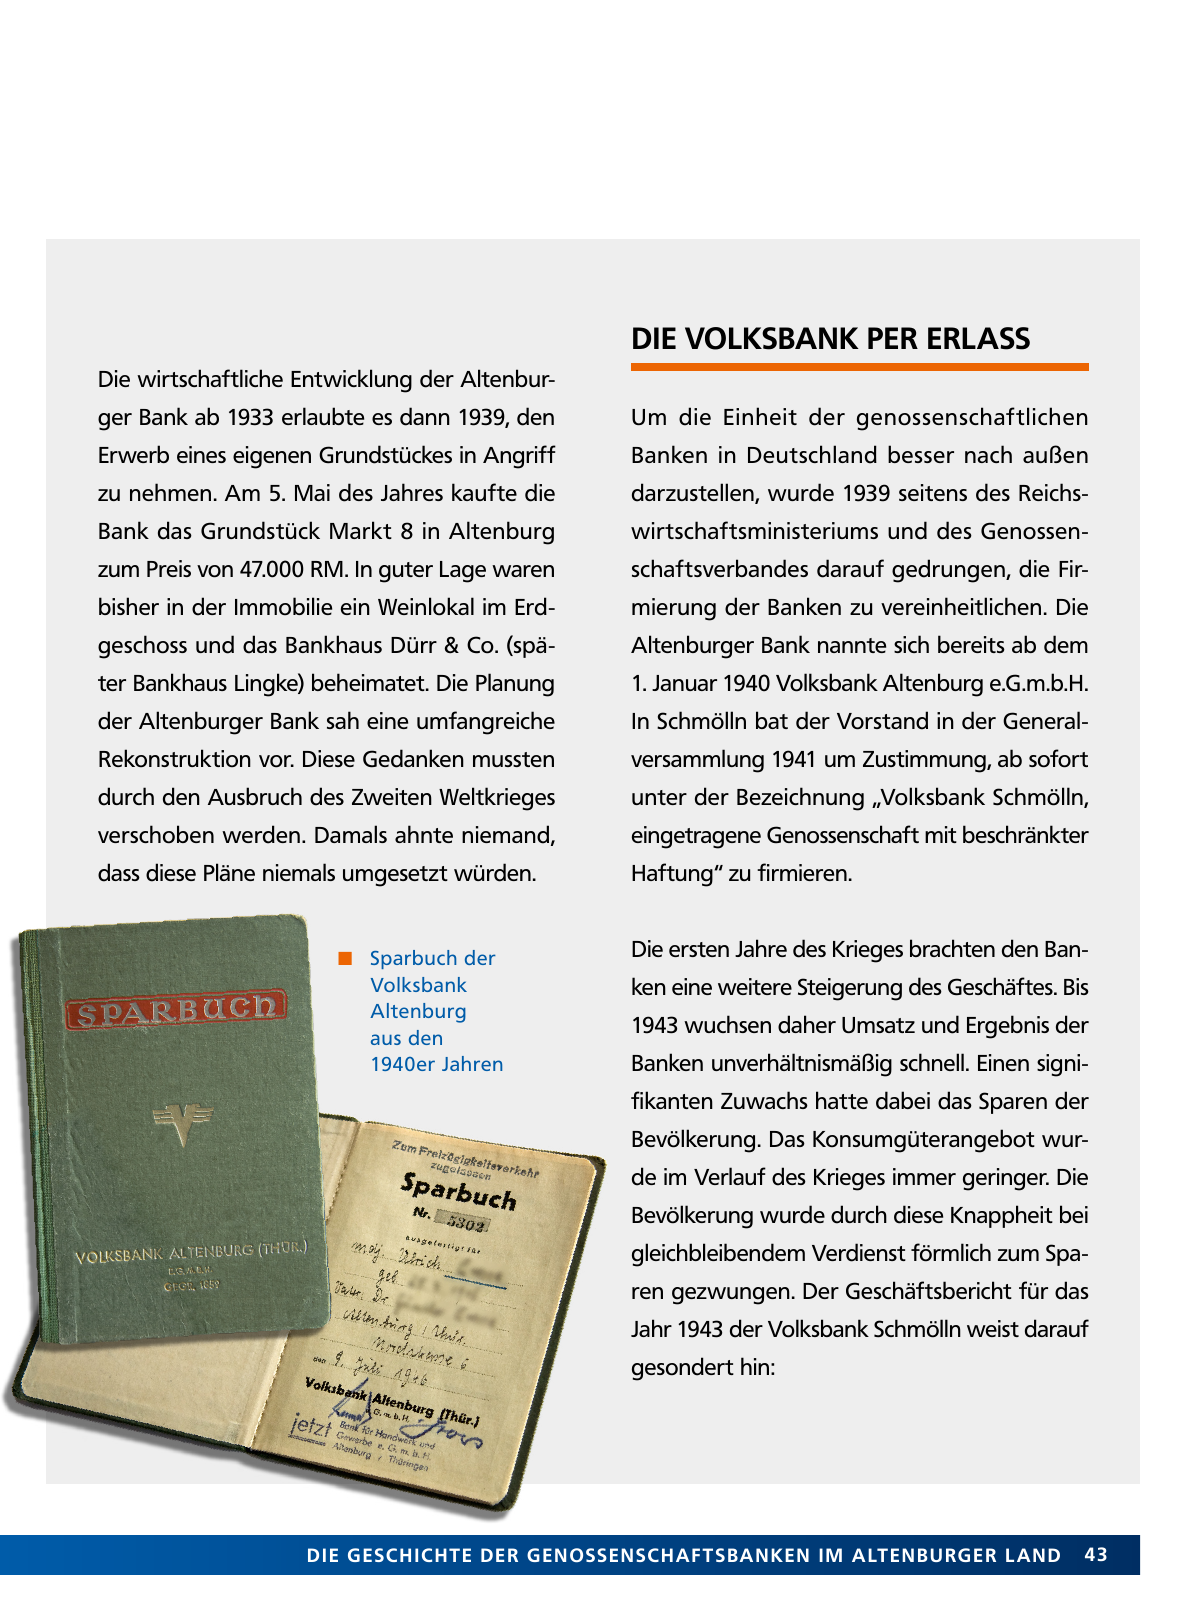 Vorschau Von der Idee, sich selbst zu helfen – 150 Jahre genossenschaftliches Bankwesen im Altenburger Land Seite 43